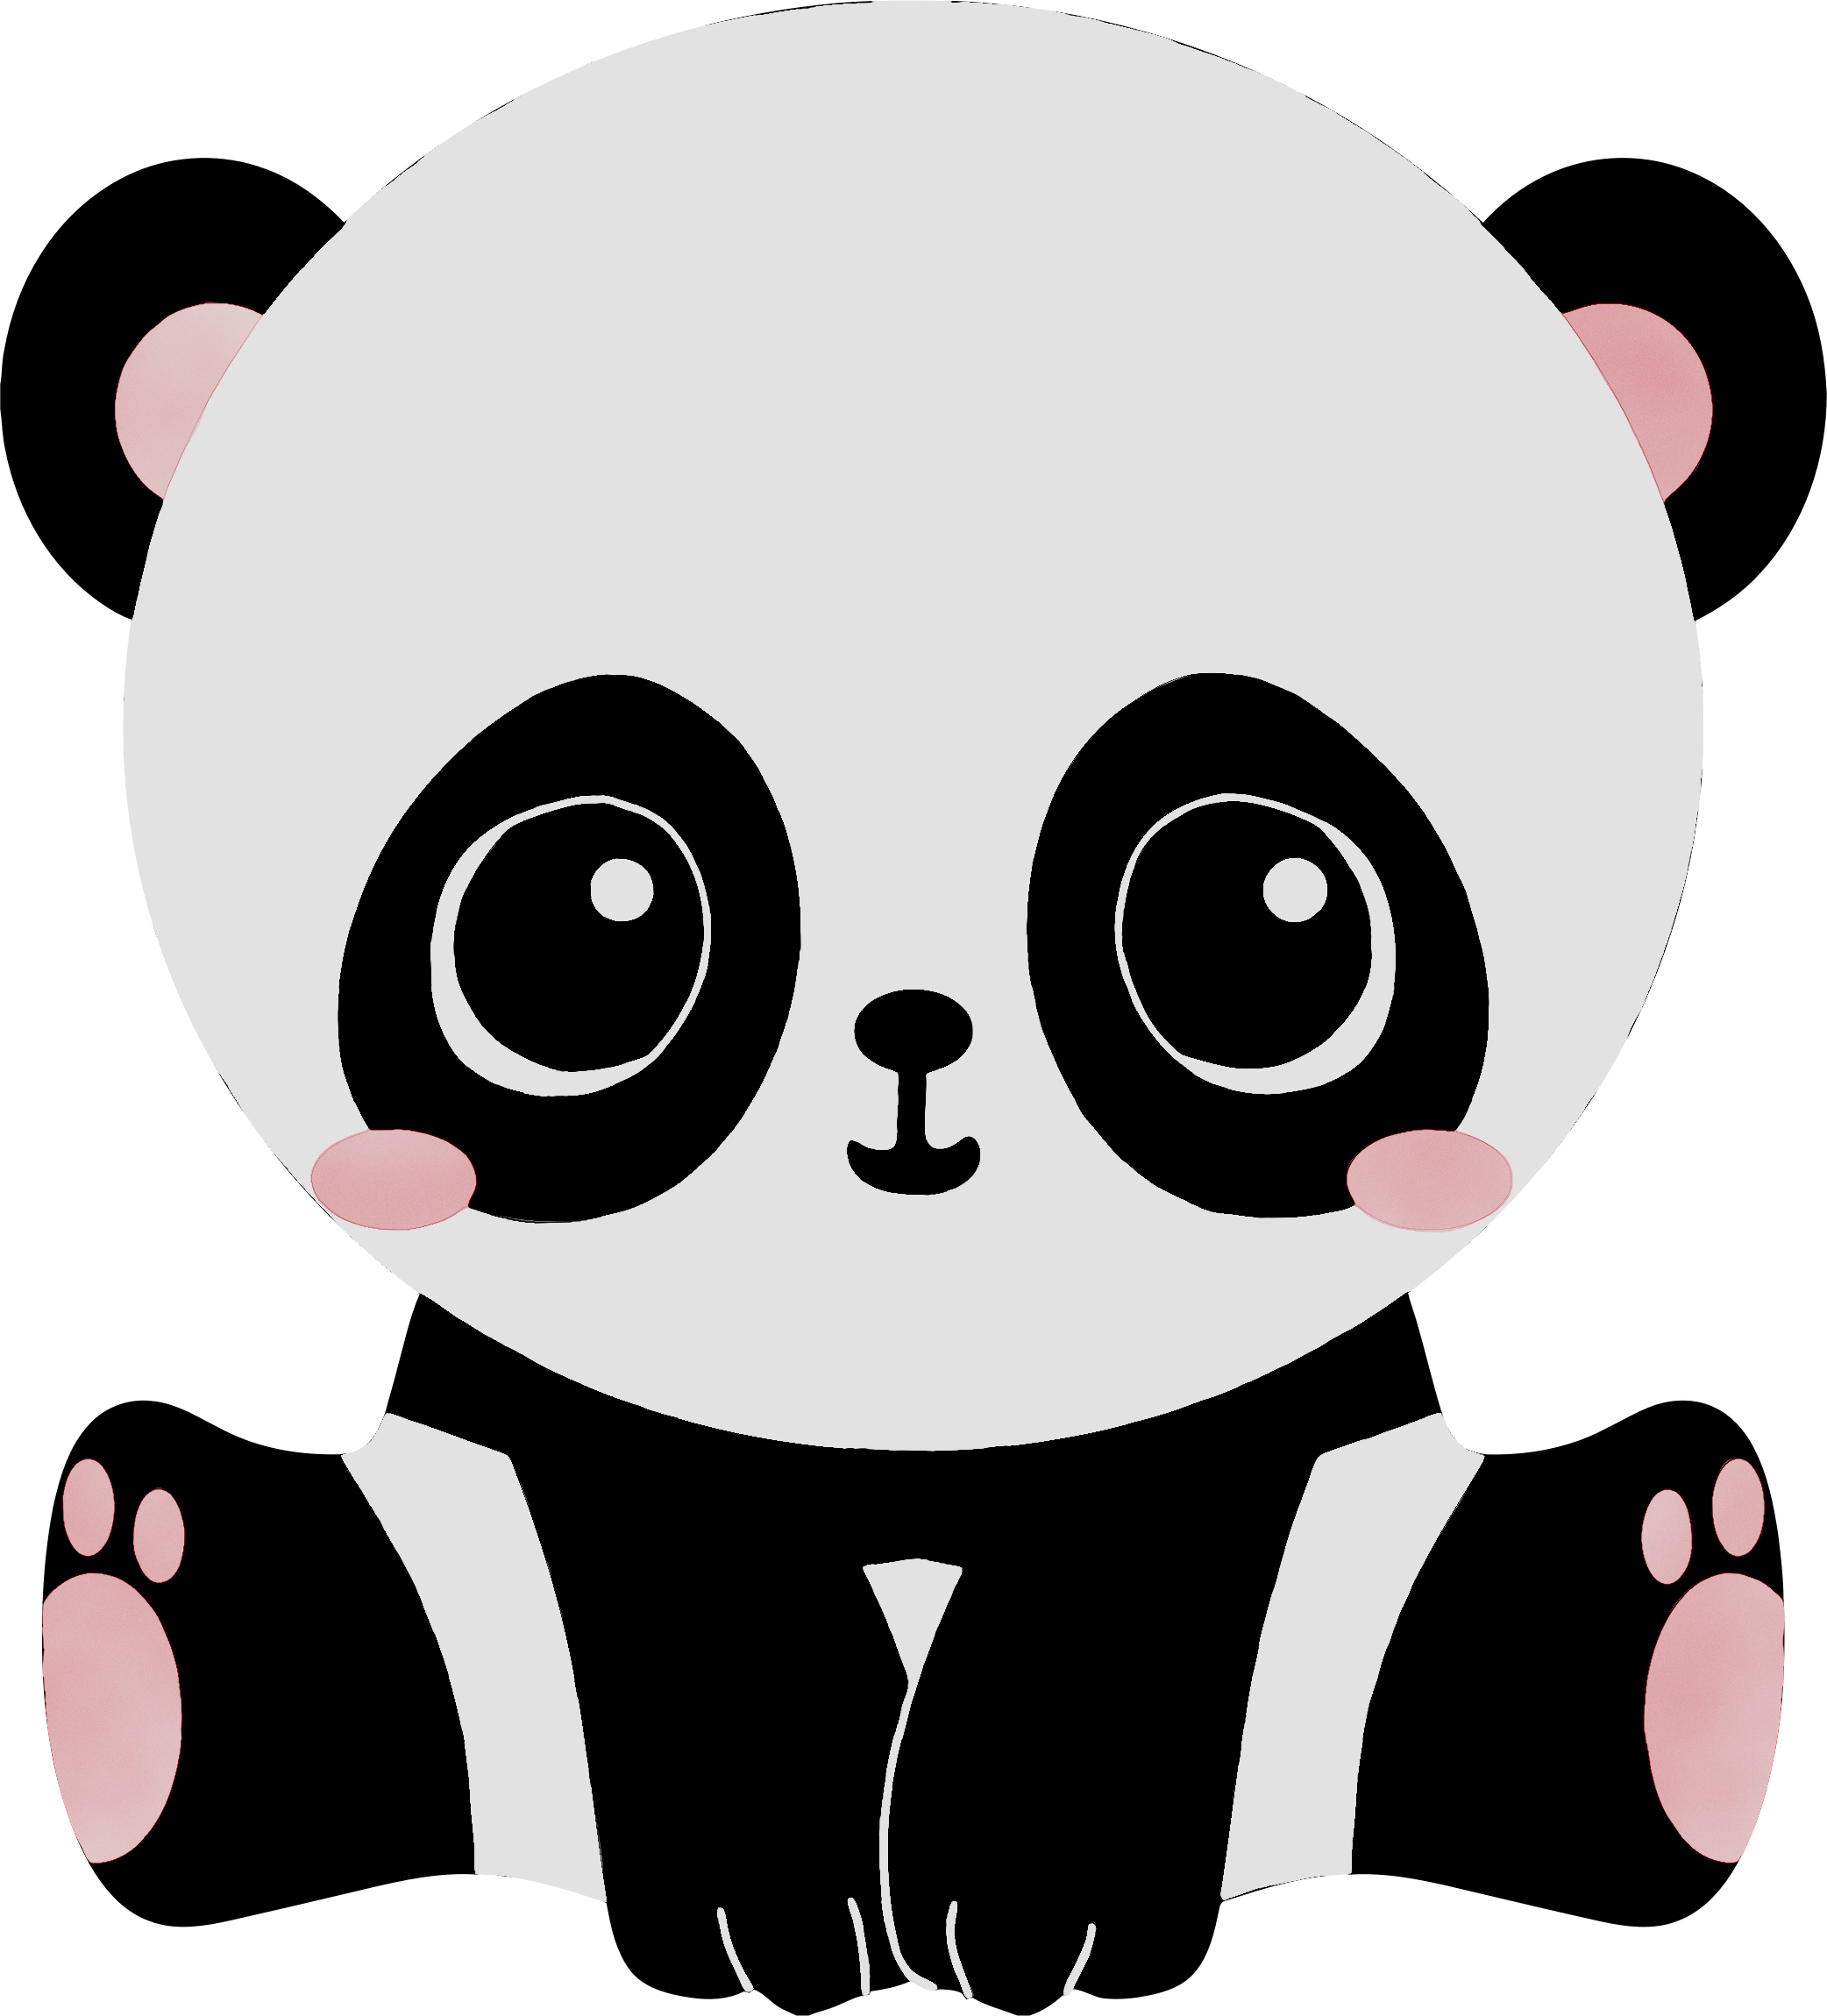 Giant panda Cuteness Bear Clip art Cartoon